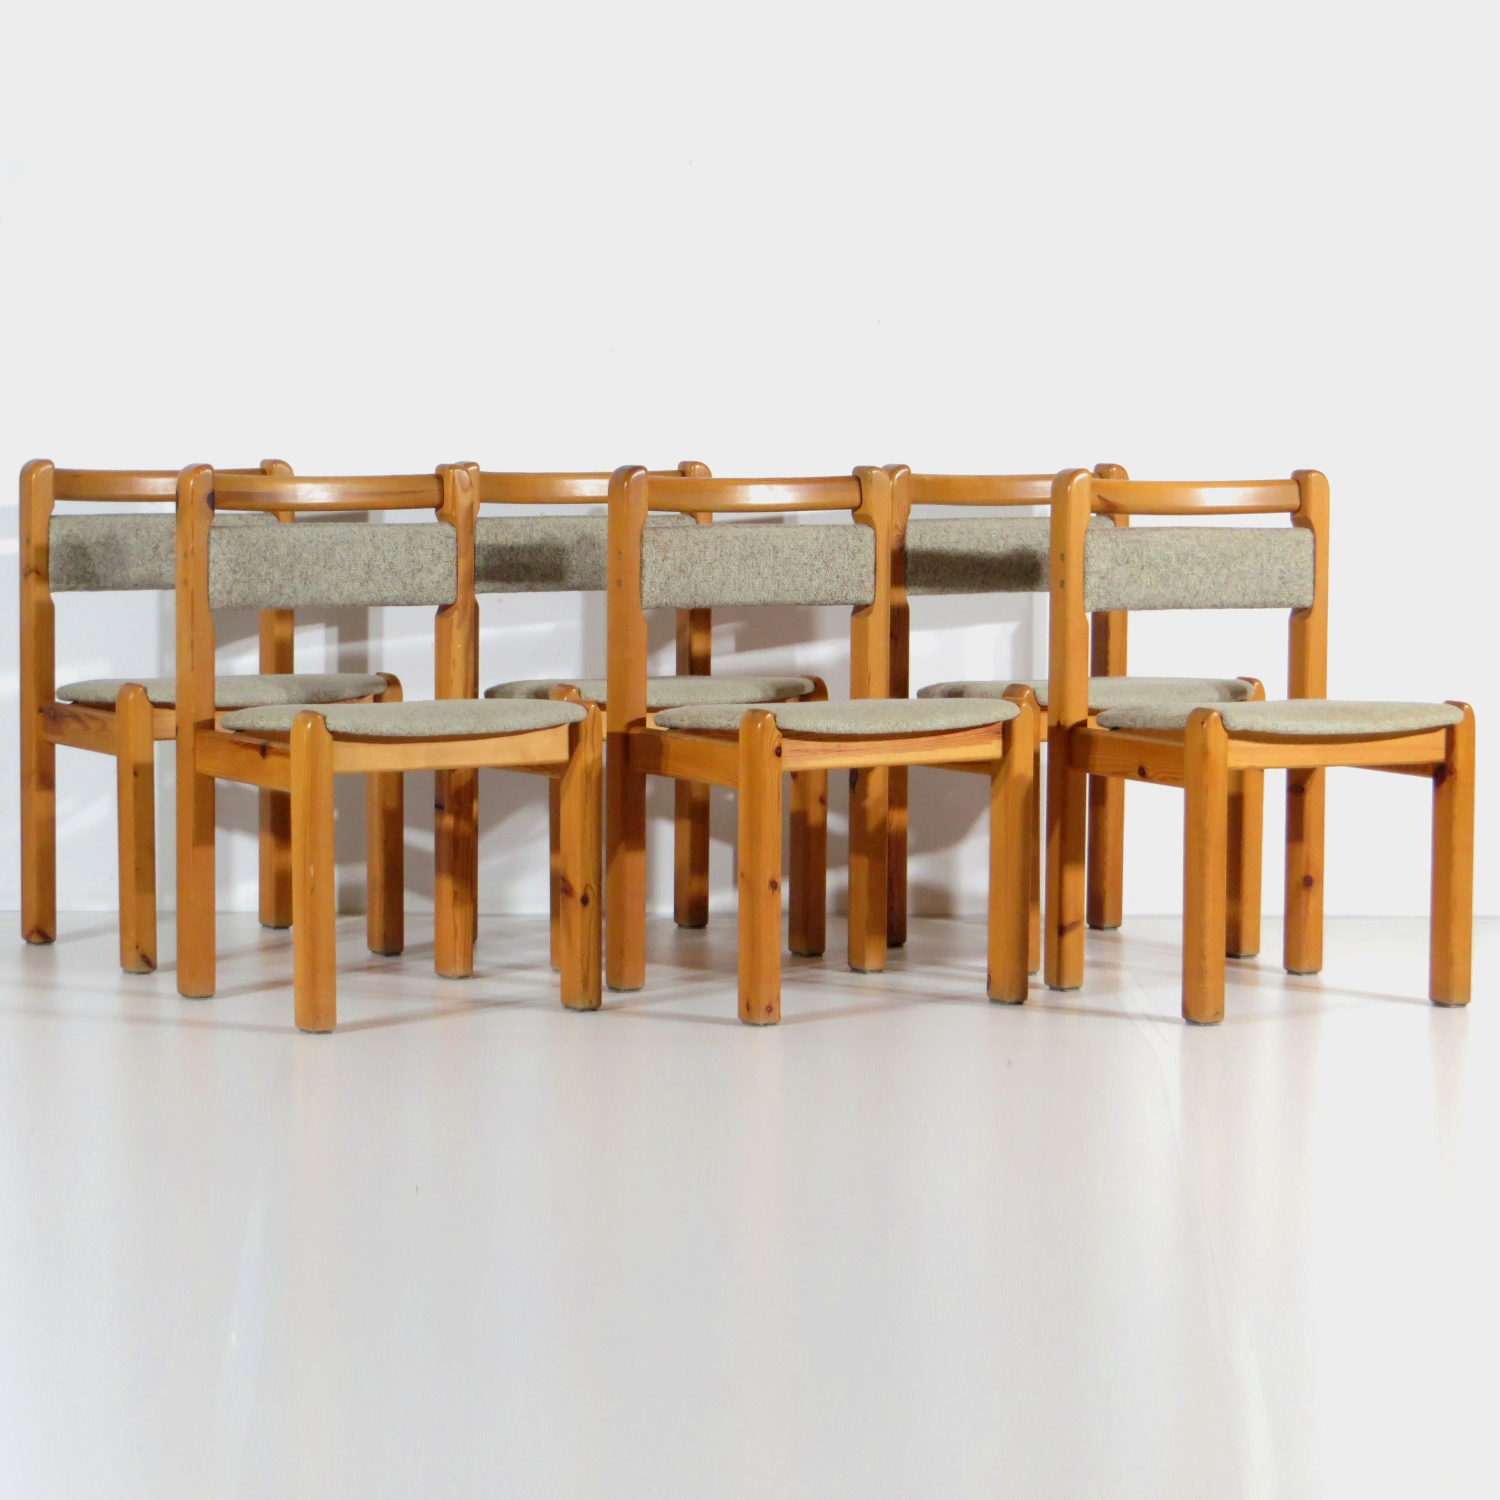 Foto van de voorkant van de 6 Deense vintage design stoelen